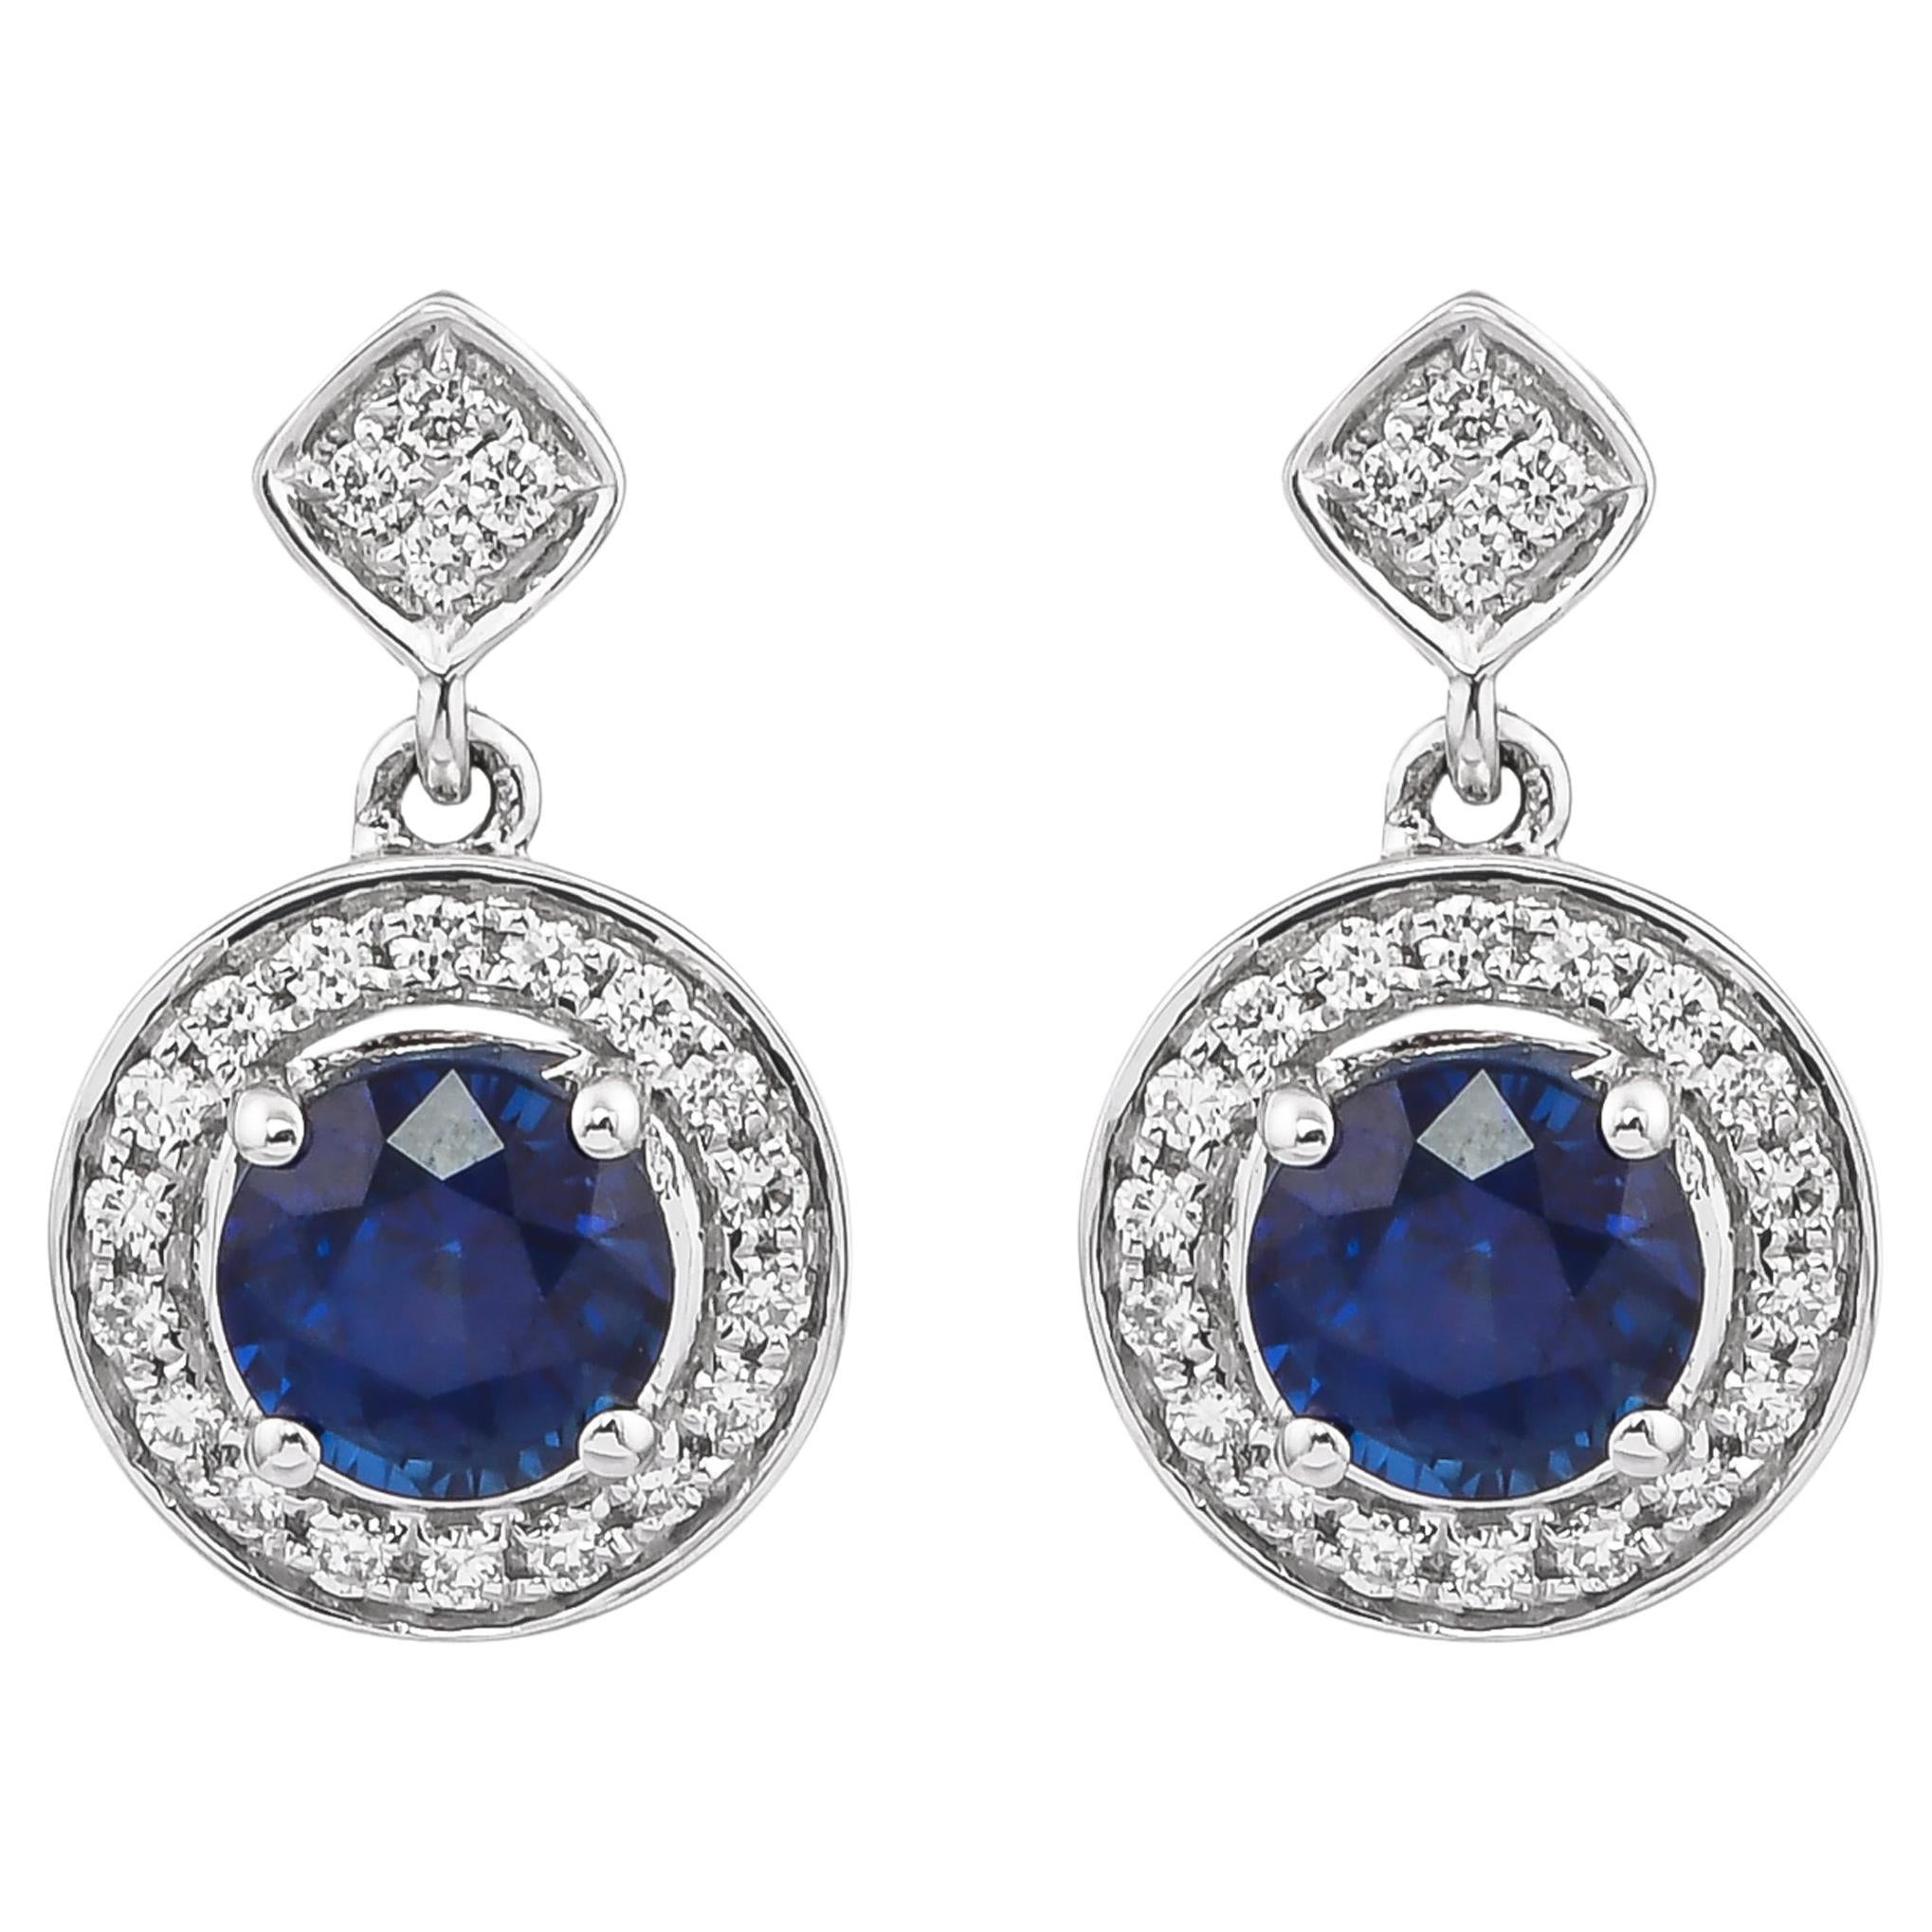 Boucles d'oreilles en or blanc 18 carats avec saphir bleu de 1,1 carat et diamants